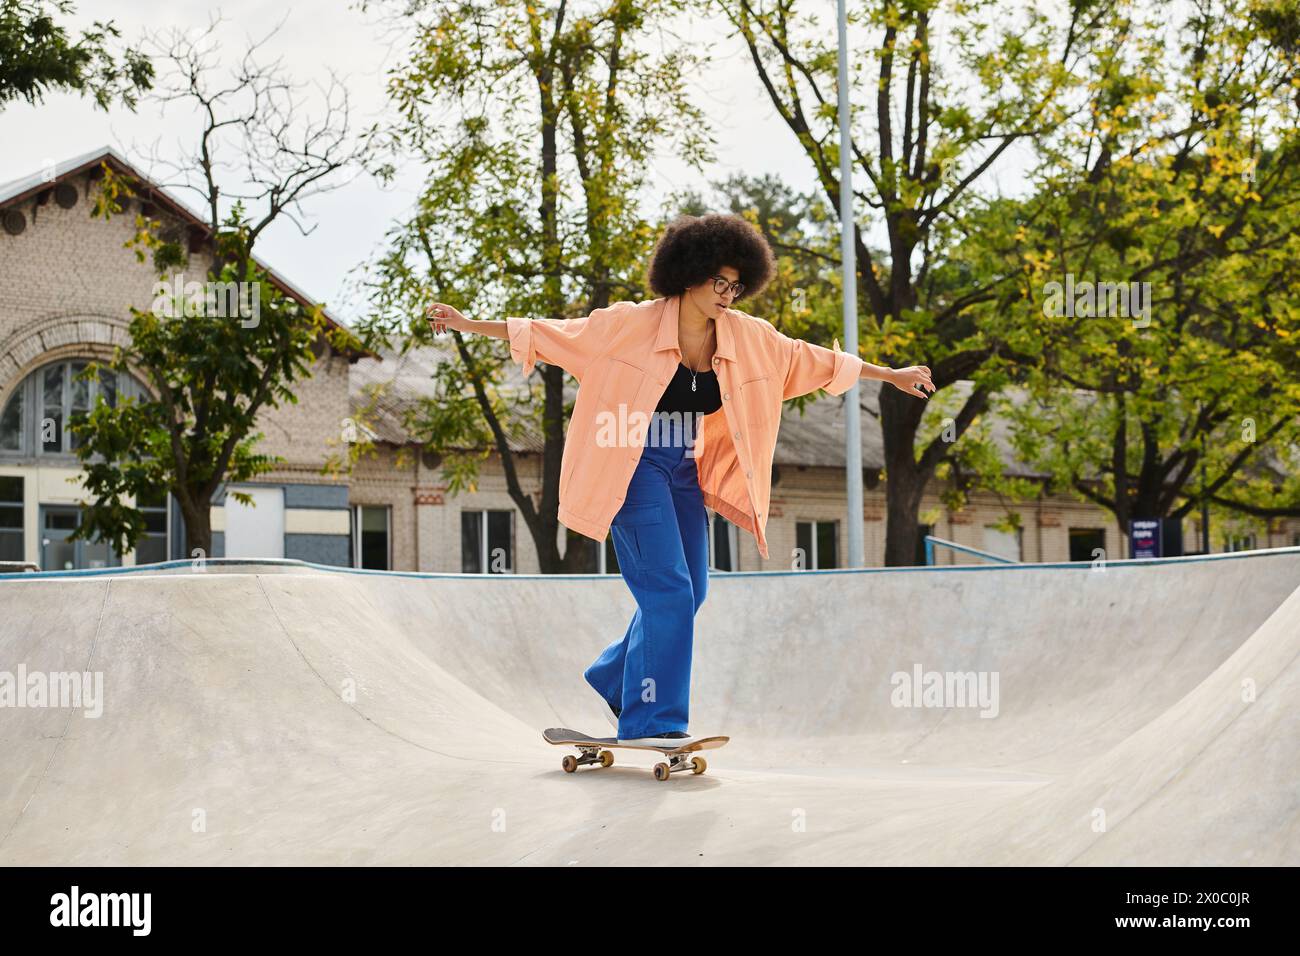 Une jeune femme afro-américaine aux cheveux bouclés monte une planche à roulettes sur le côté d'une rampe dans un skate Park en plein air. Banque D'Images